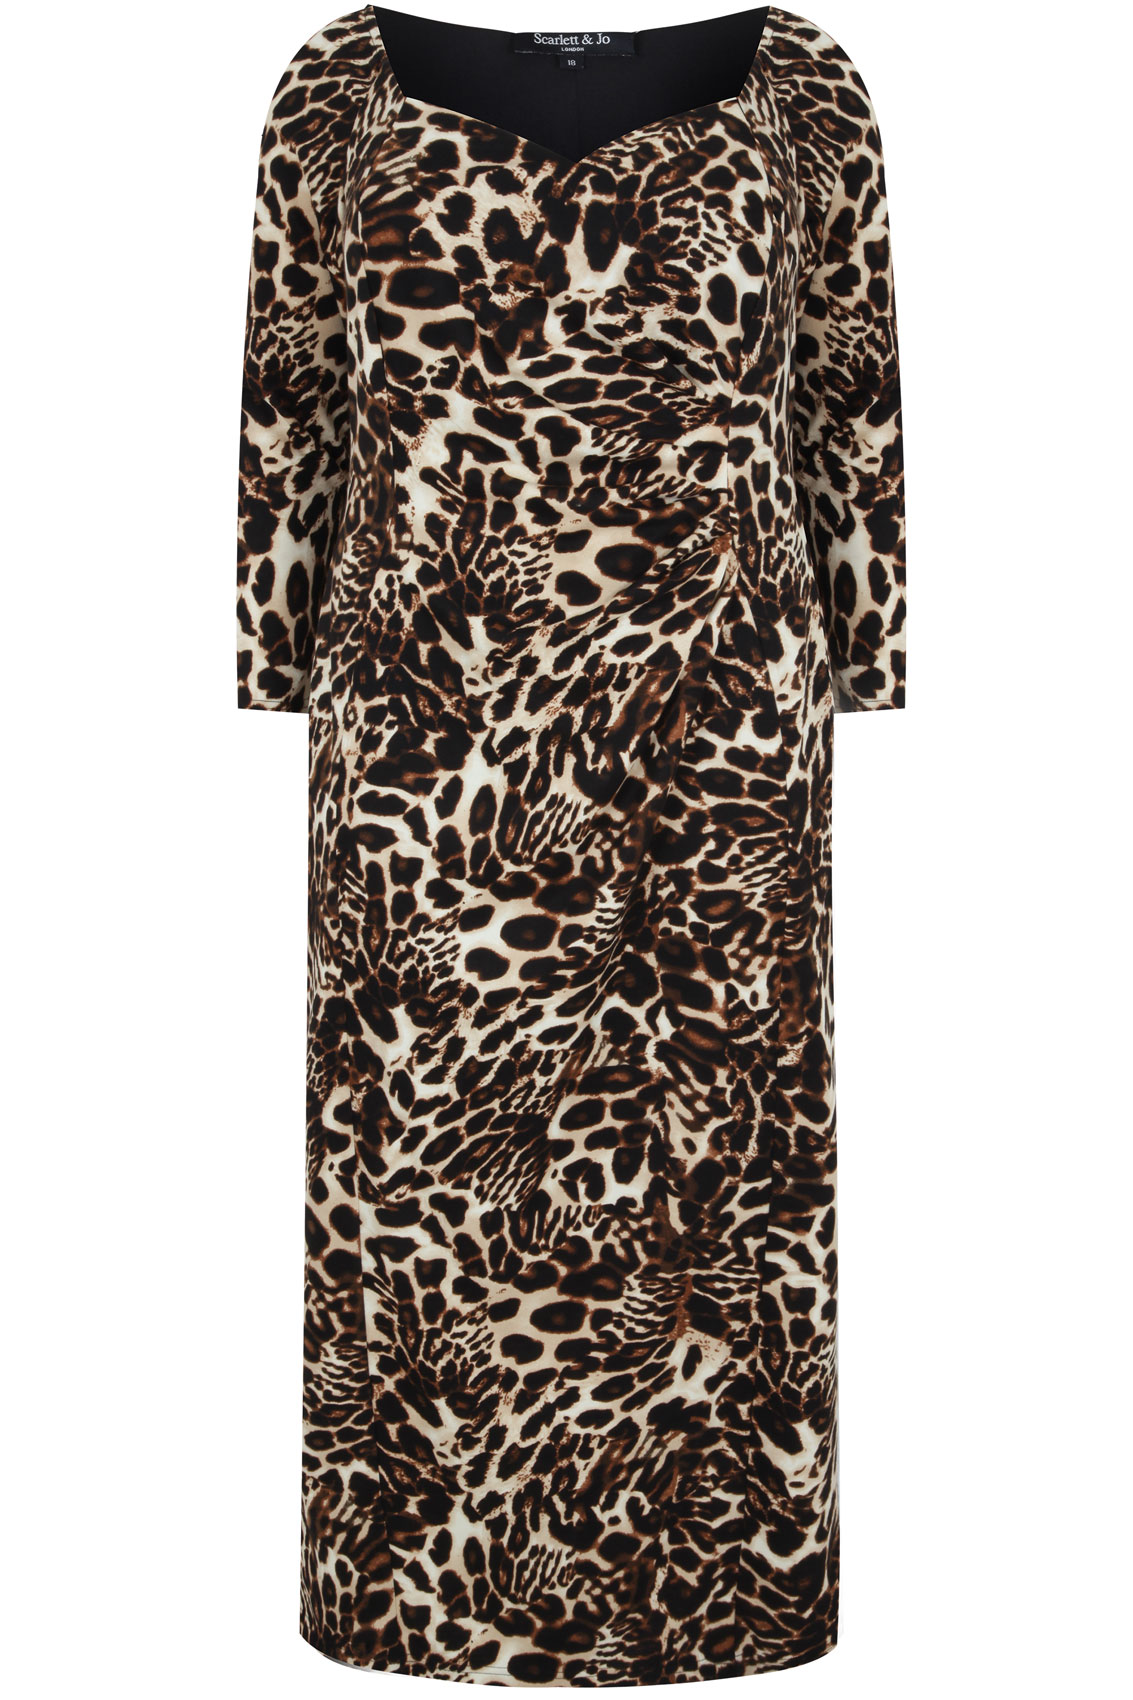 SCARLETT & JO Leopard Print Maxi Dress Plus Size 14 to 32